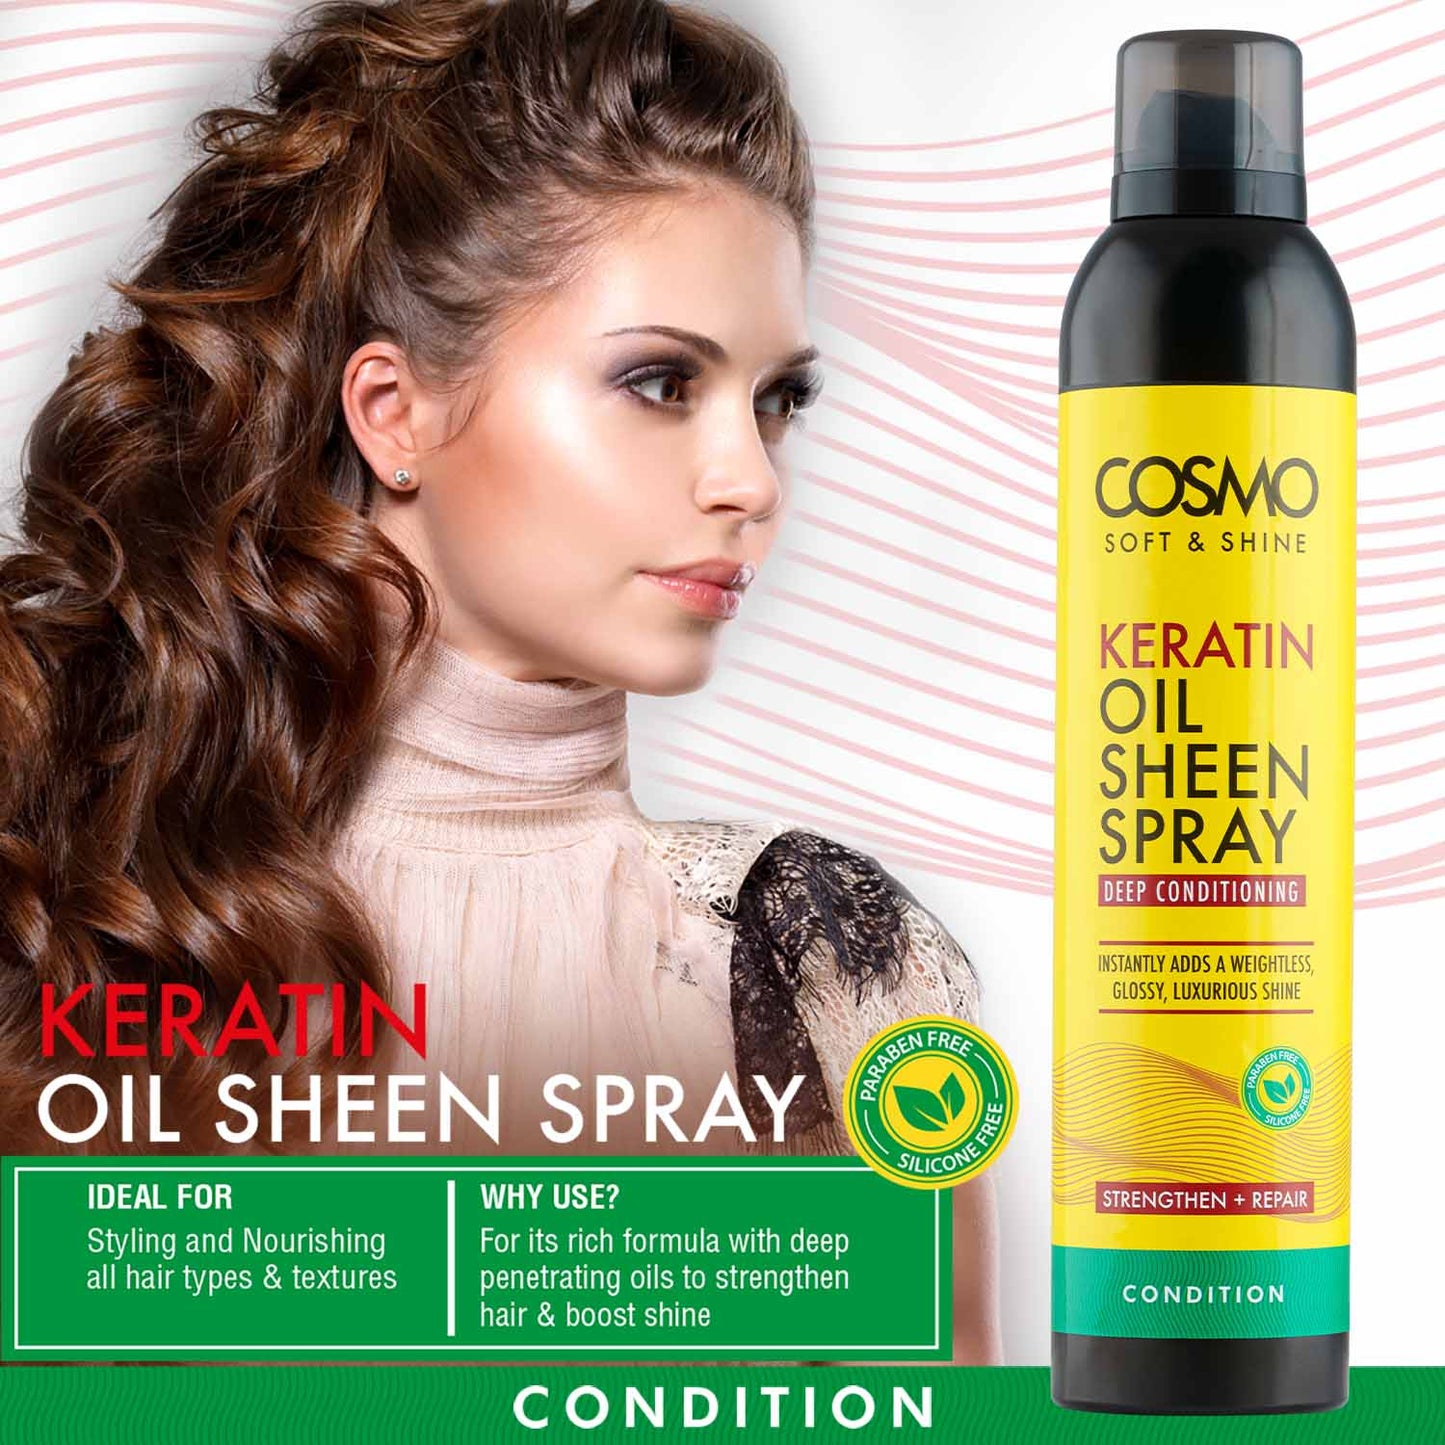 COSMO SOFT & SHINE KERATIN OIL SHEEN SPRAY CONDITION - 300ML